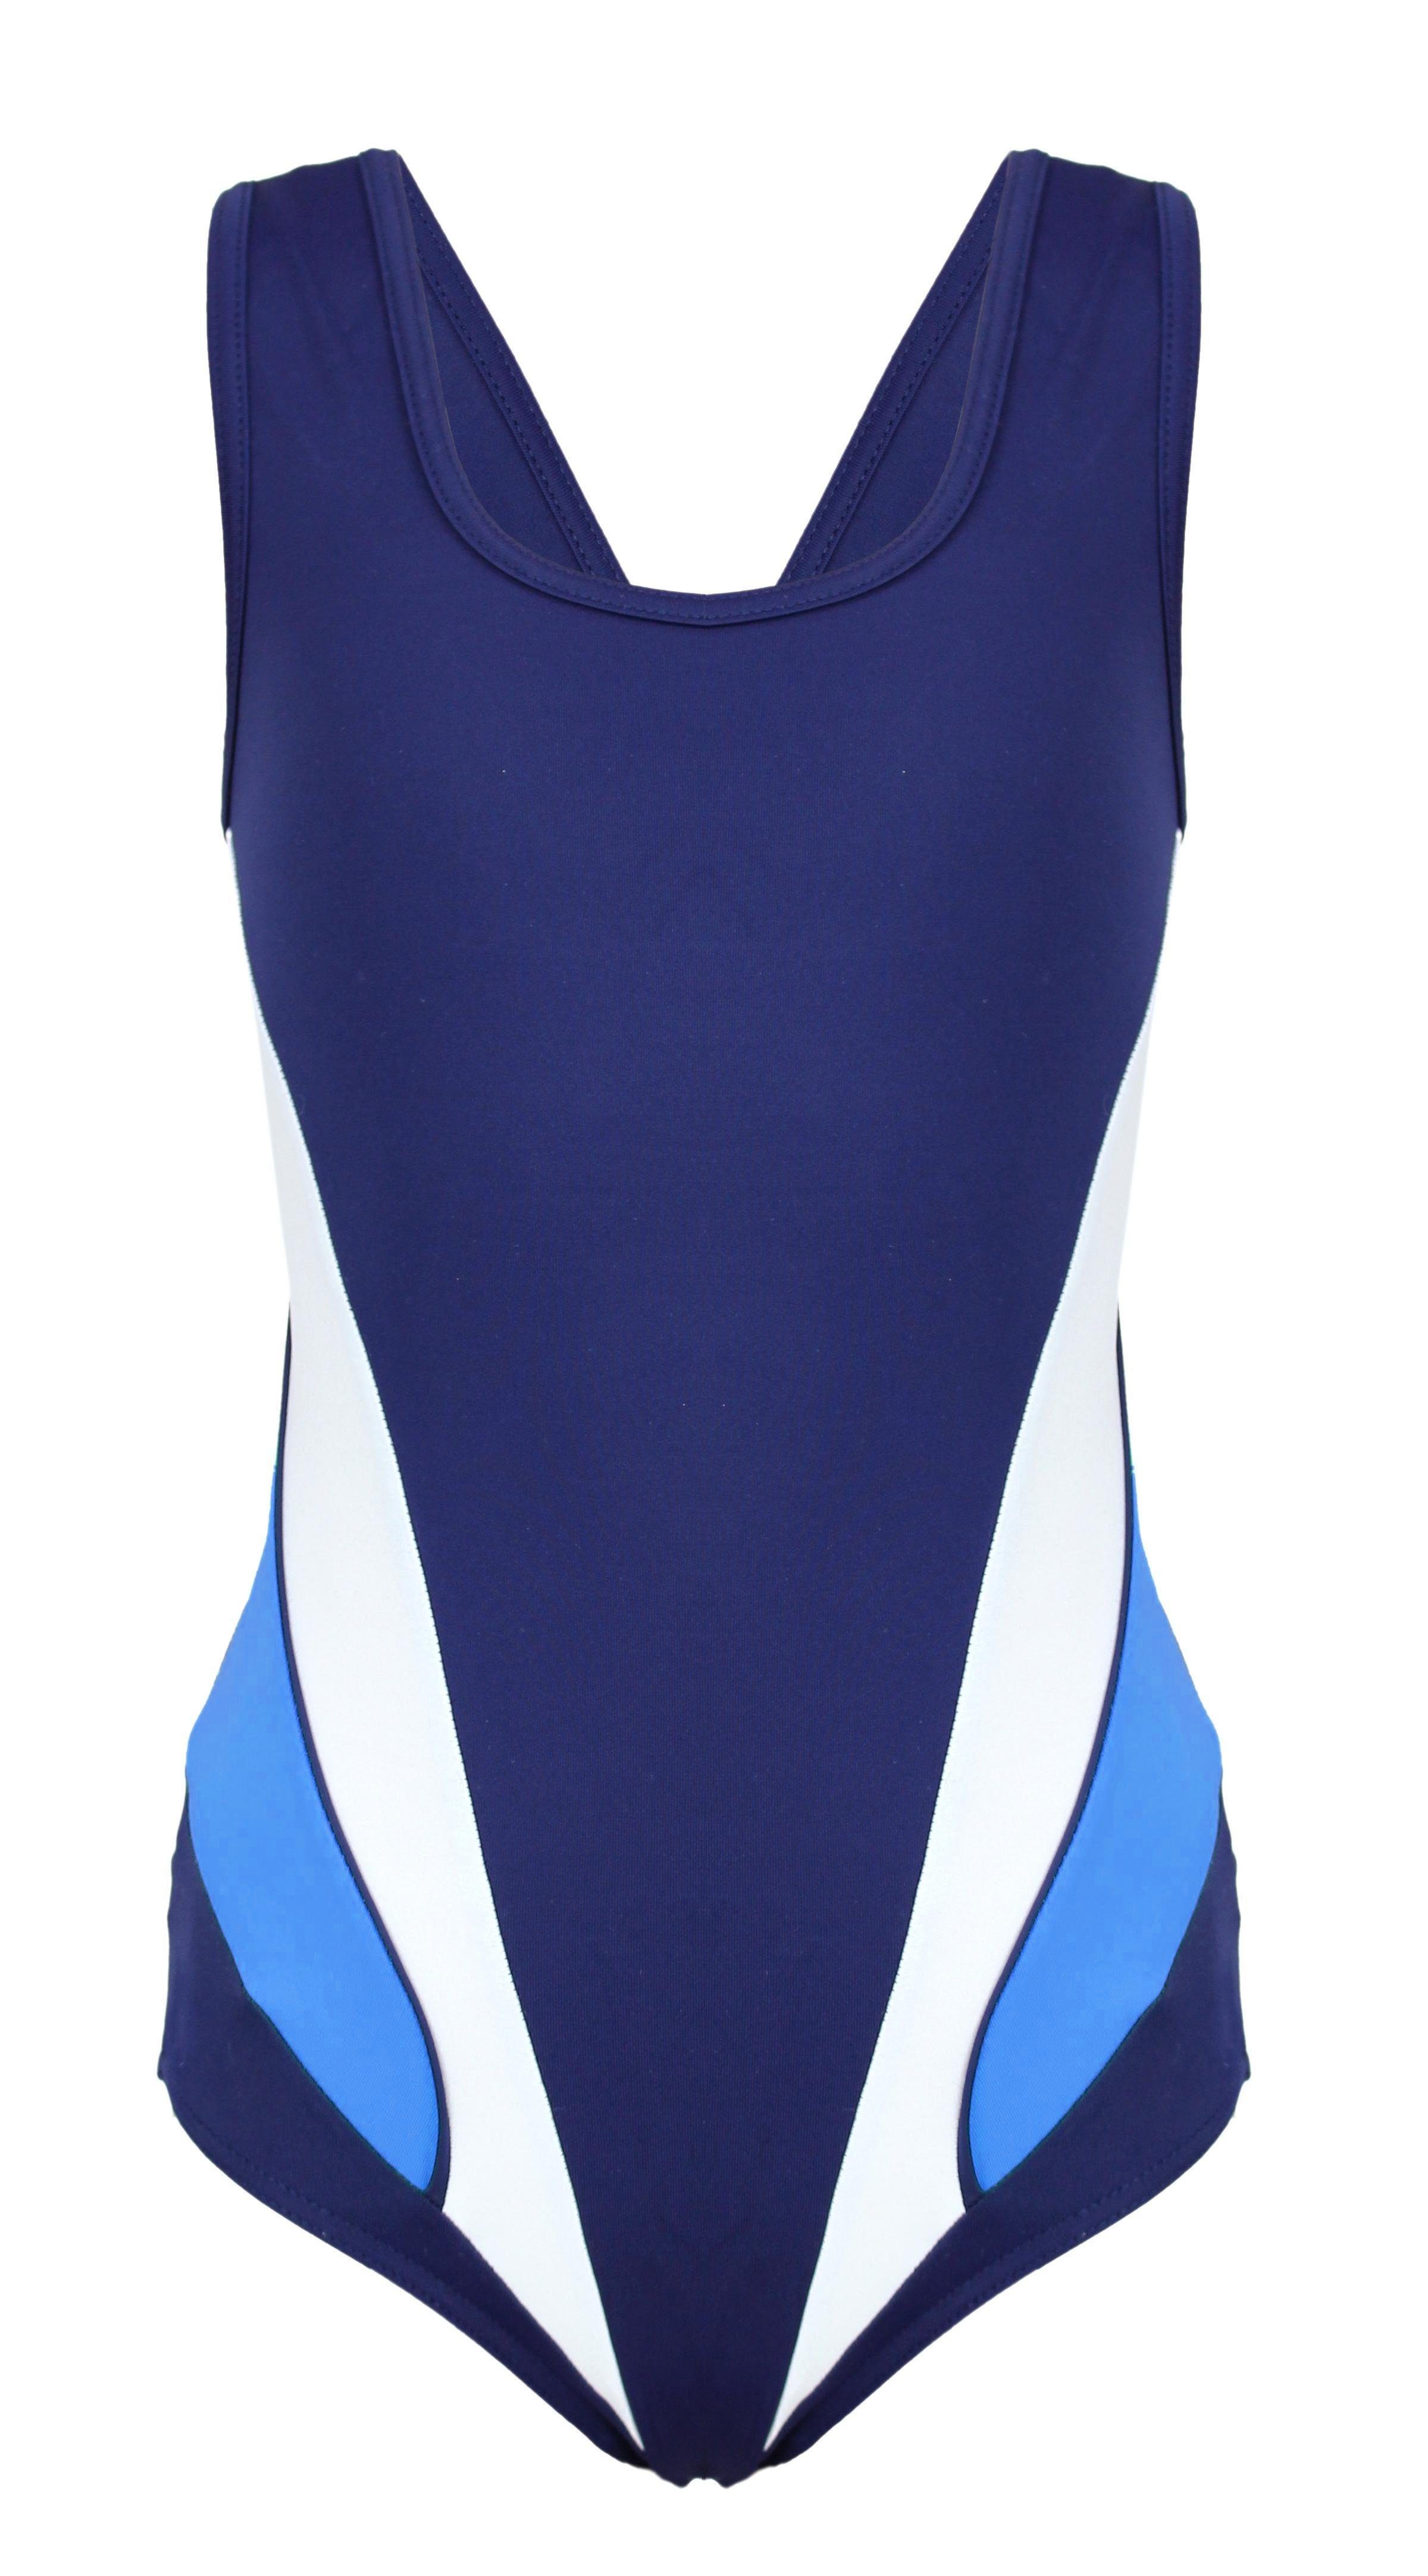 Aquarti Schwimmanzug Aquarti Mädchen Schwimmanzug Sportlich mit Y-Träger